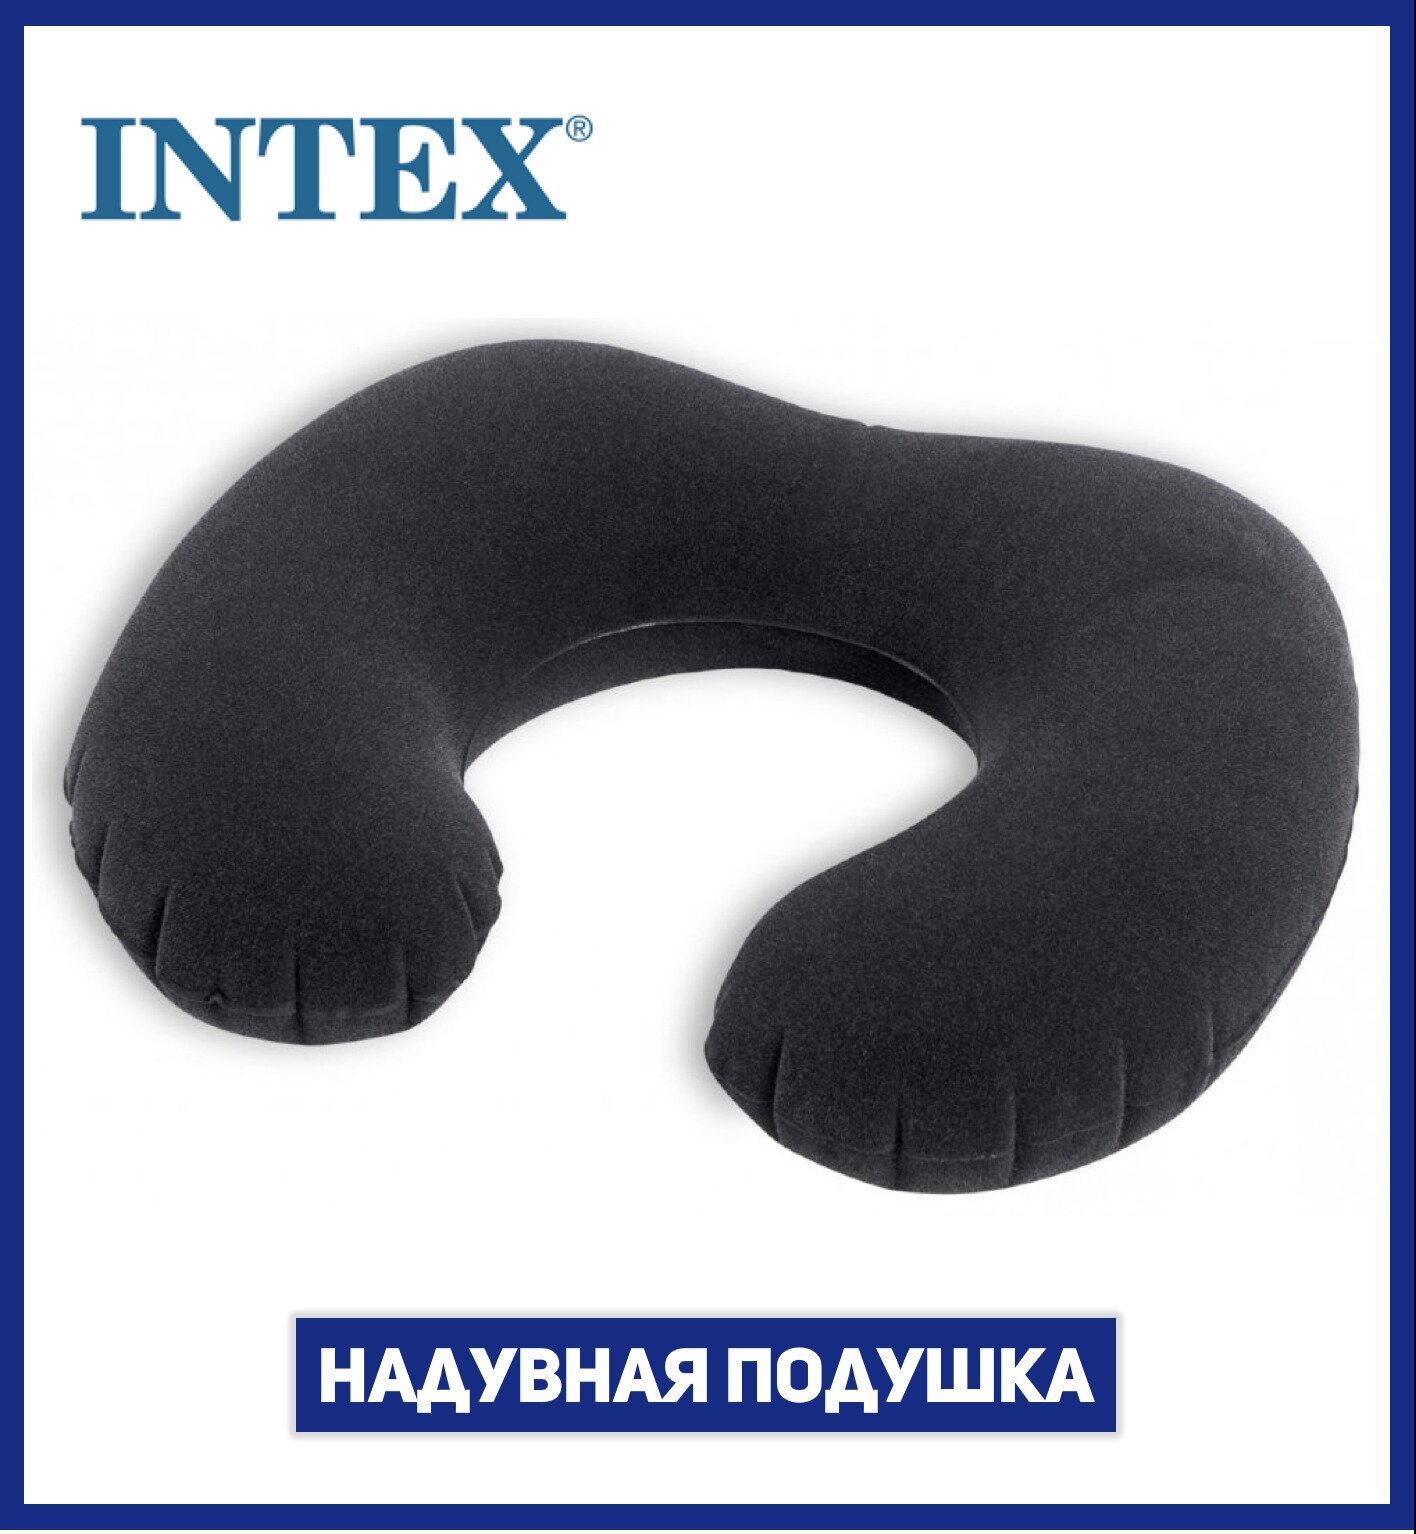 Подушка для шеи Intex